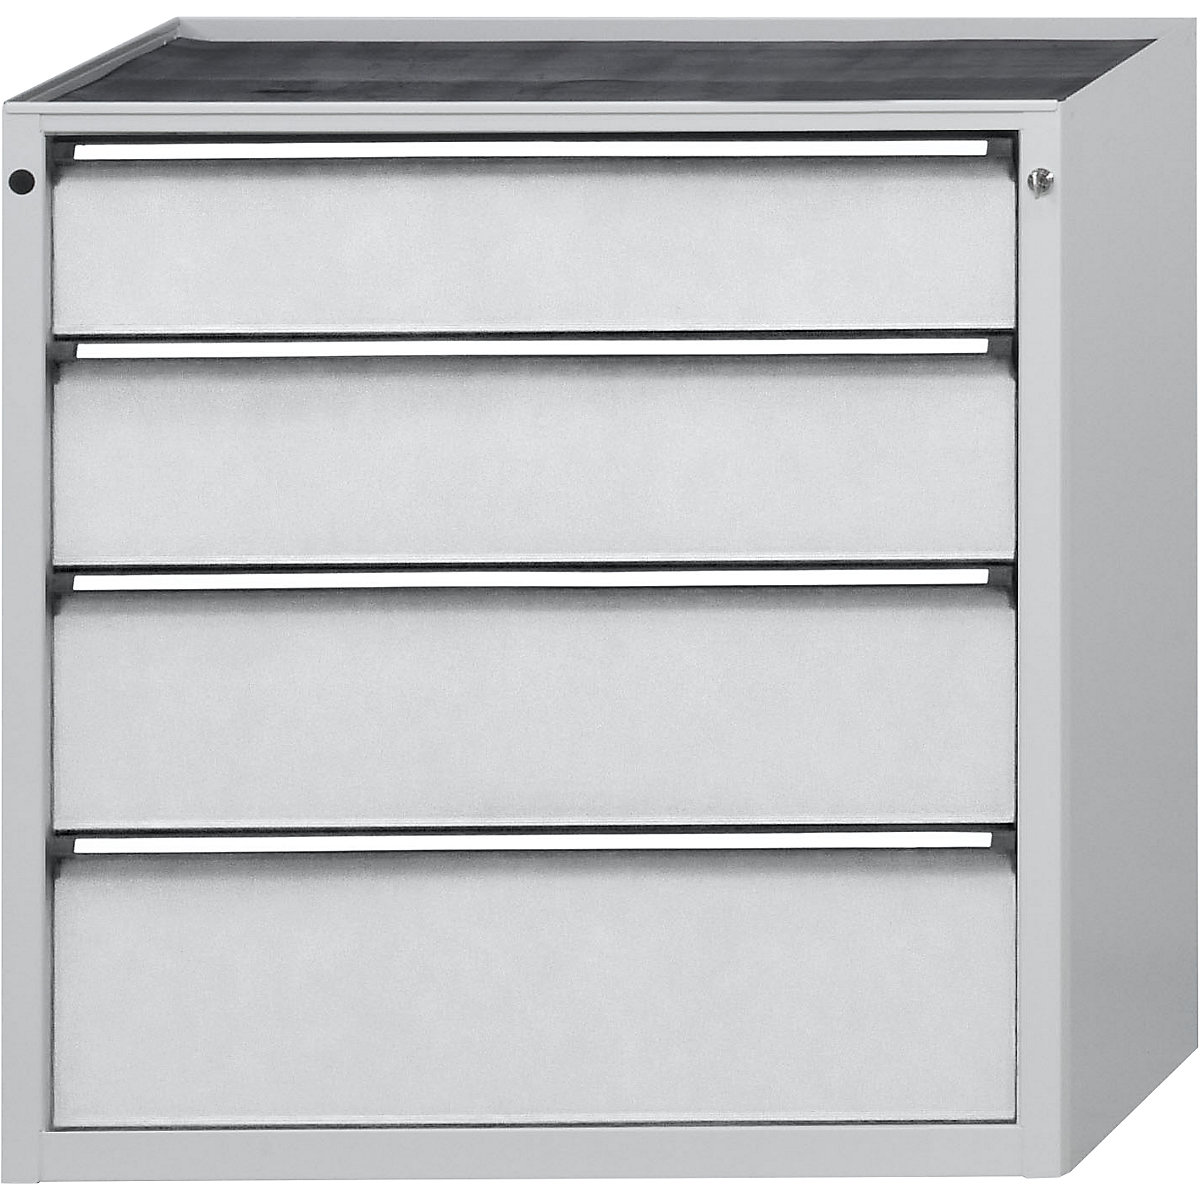 Zásuvková skříň – ANKE, š x h 910 x 675 mm, nosnost zásuvky 200 kg, 4 zásuvky, výška 980 mm, čelo světle šedé